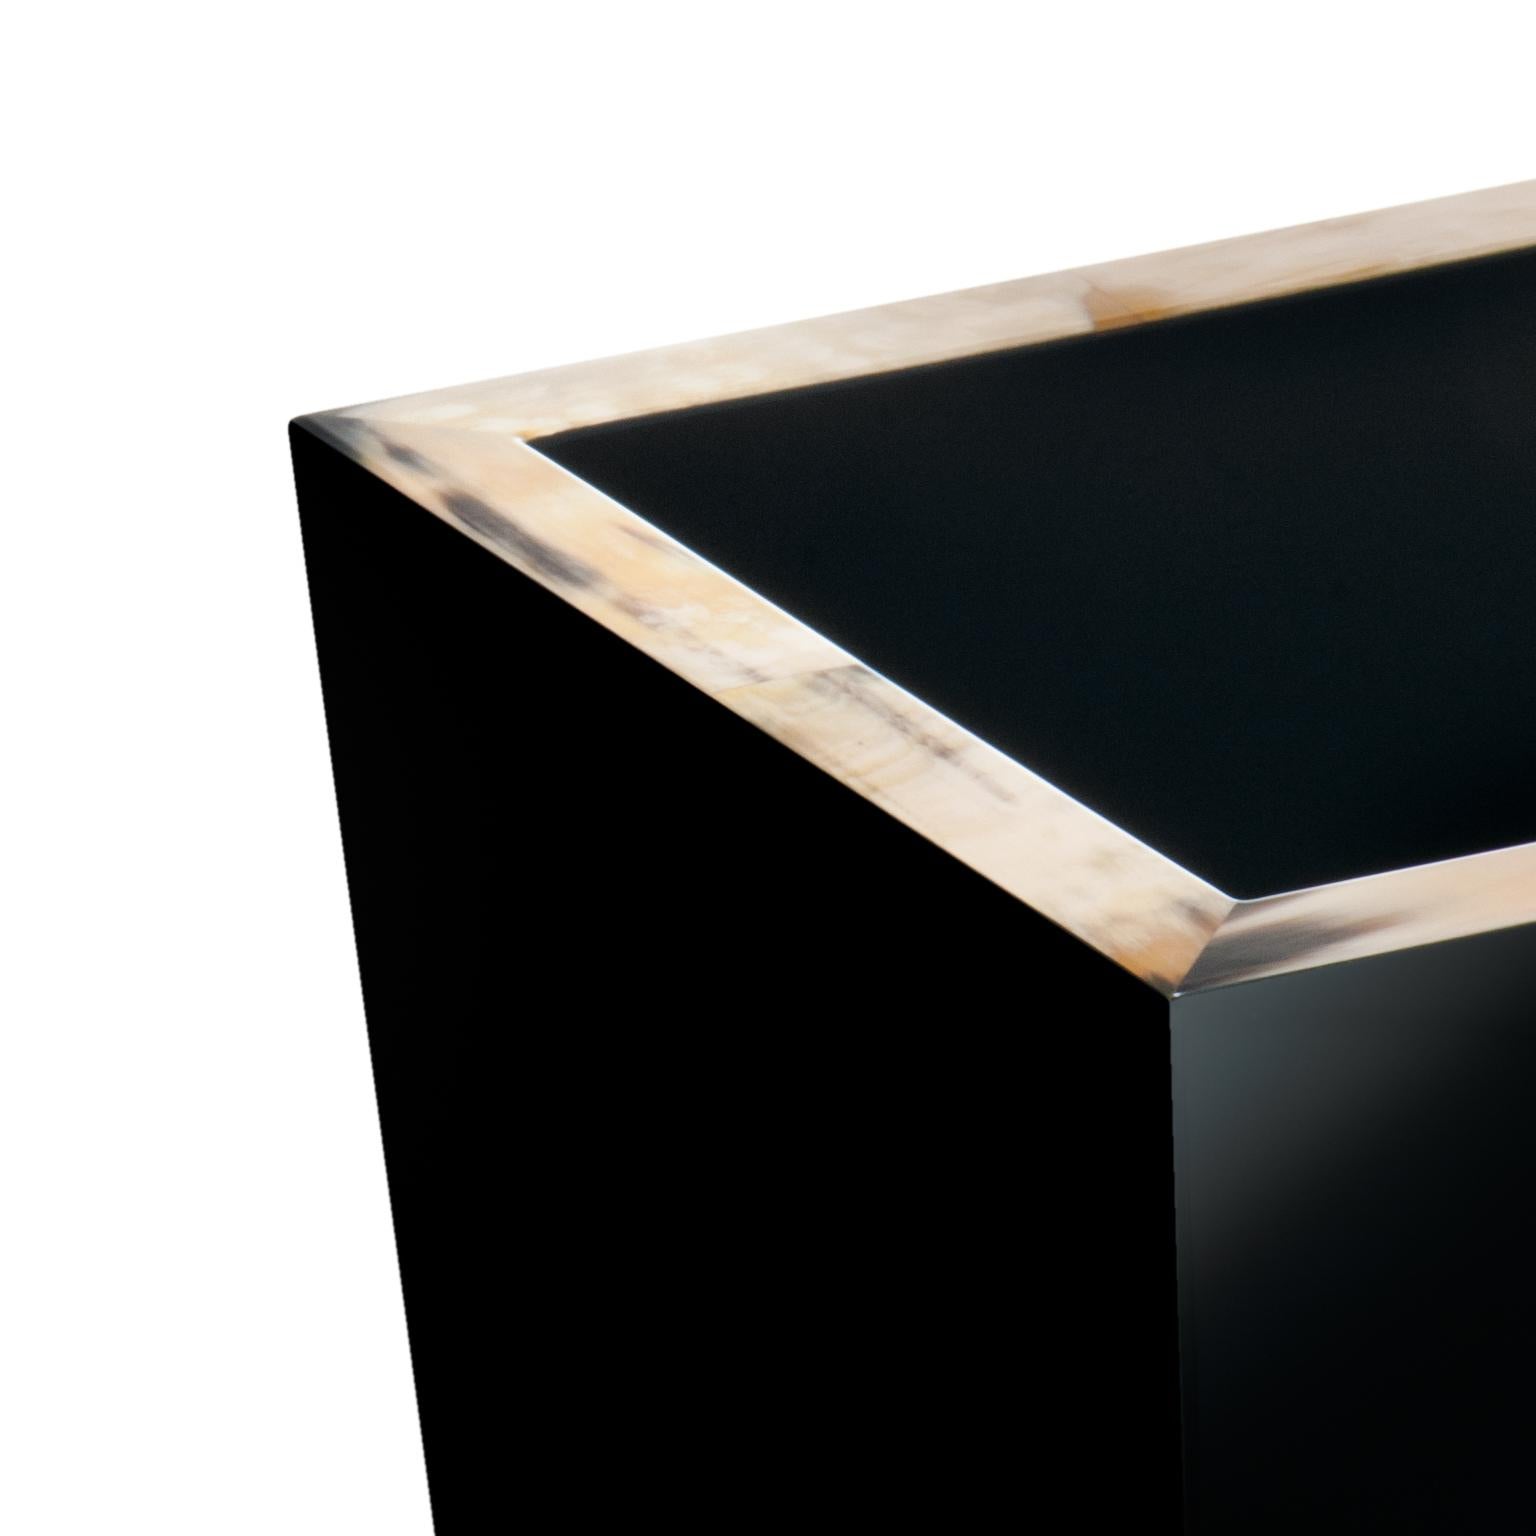 Der aus Holz handgefertigte Papierkorb Fedro hat die Form einer umgekehrten Pyramide und ist schwarz hochglanzlackiert. Dieser Papierkorb ist mit einer eleganten Umrandung aus Corno Italiano verziert und ist eine unverzichtbare Ergänzung für Ihr